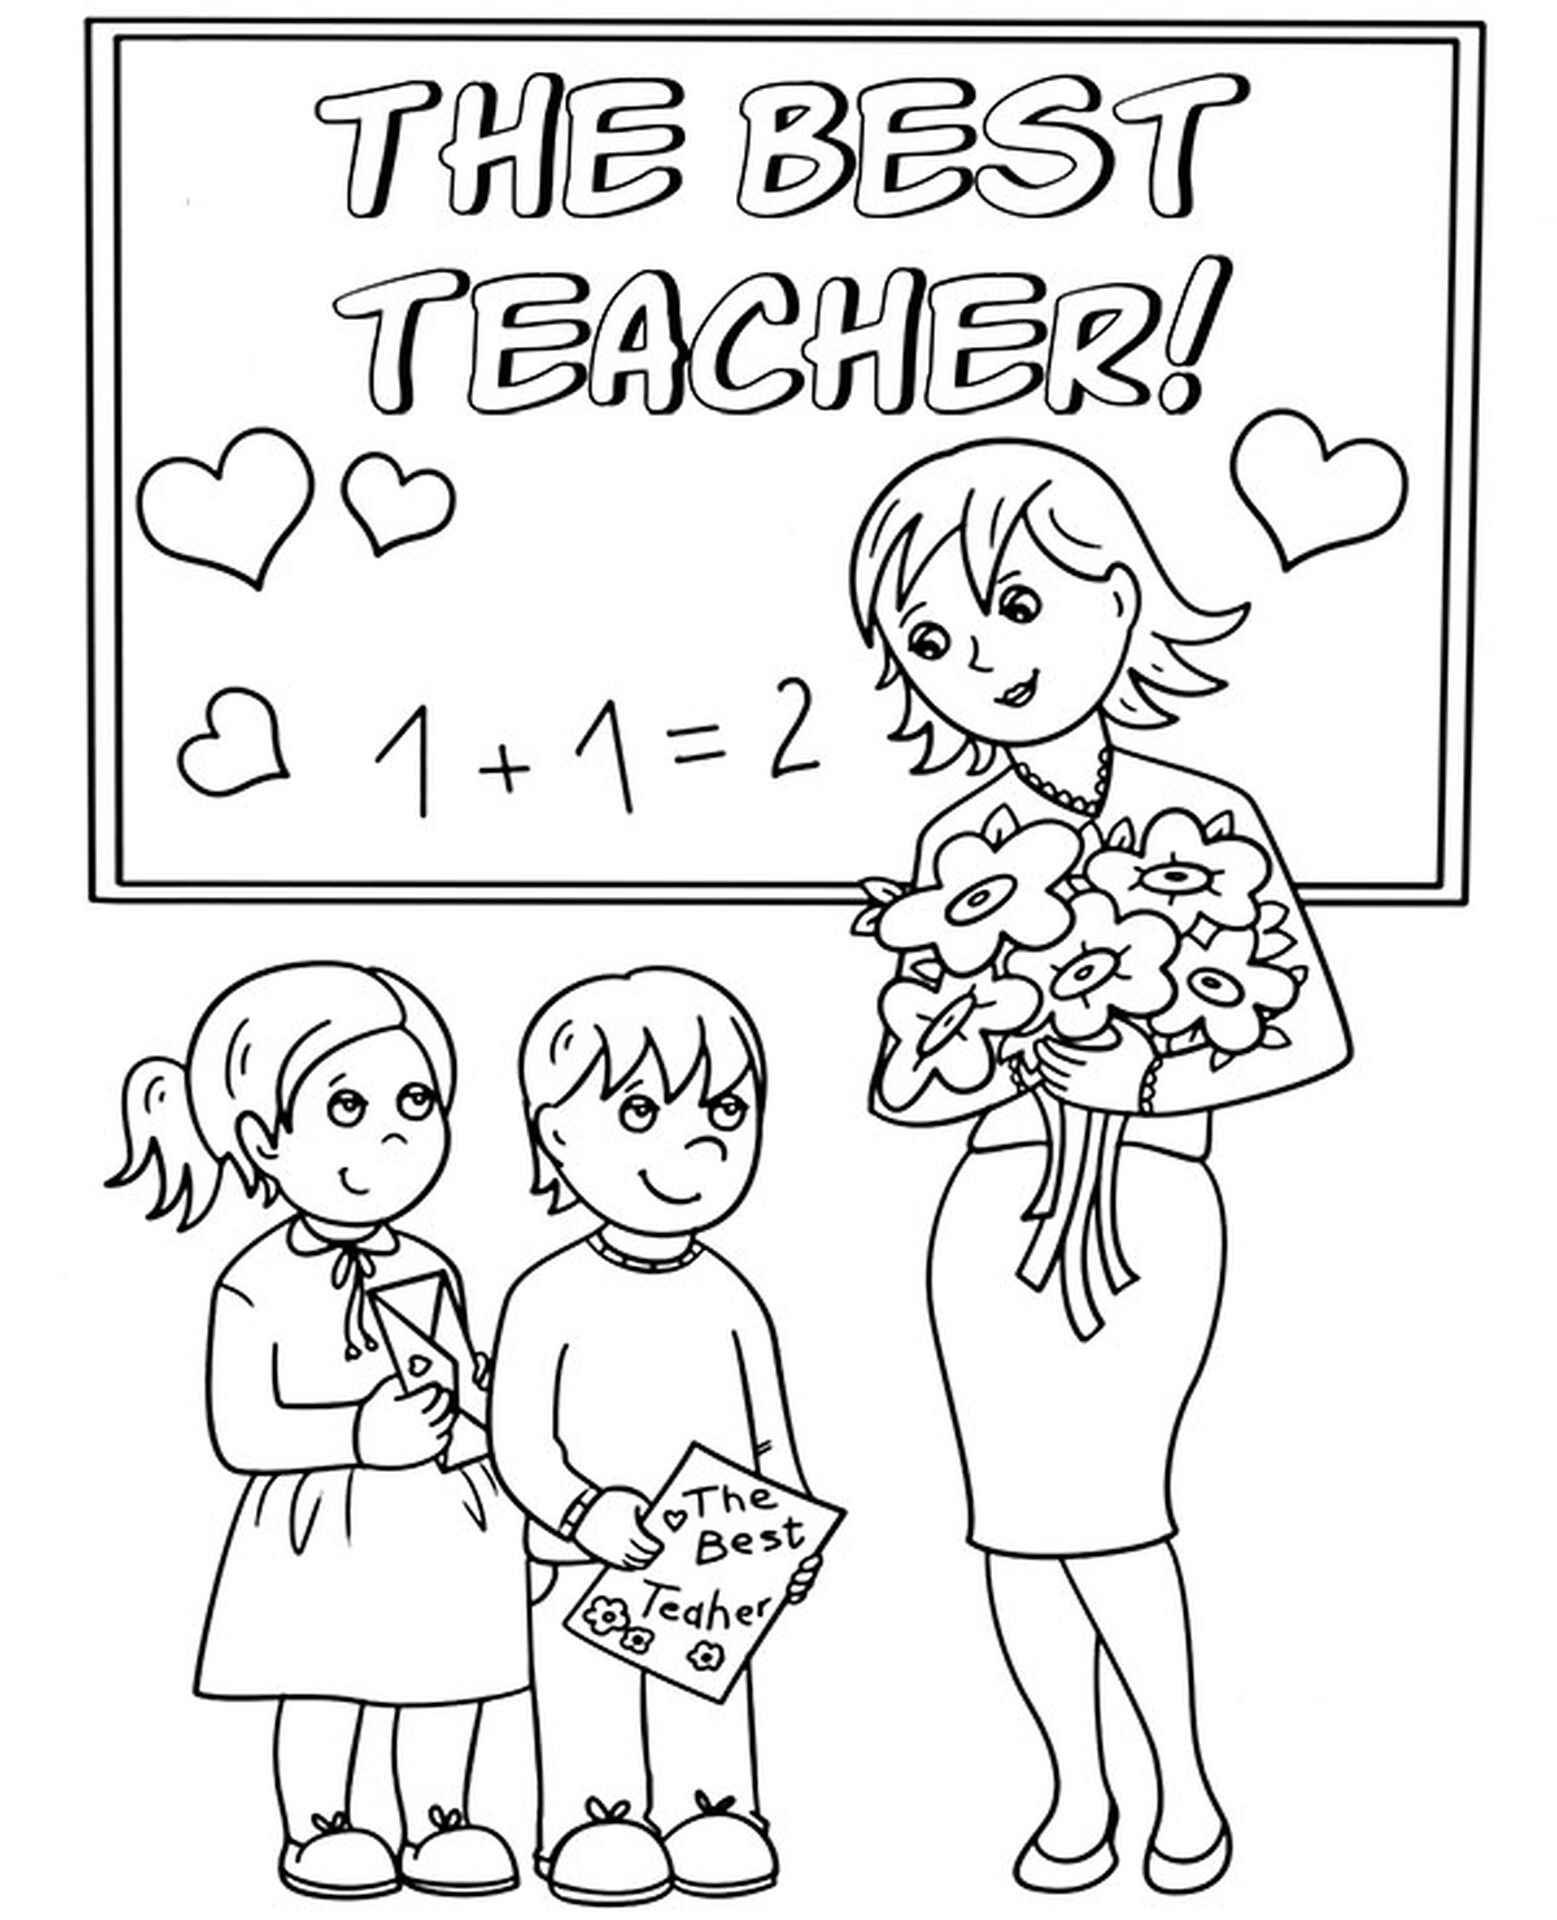 Раскраска для учителя на день учителя